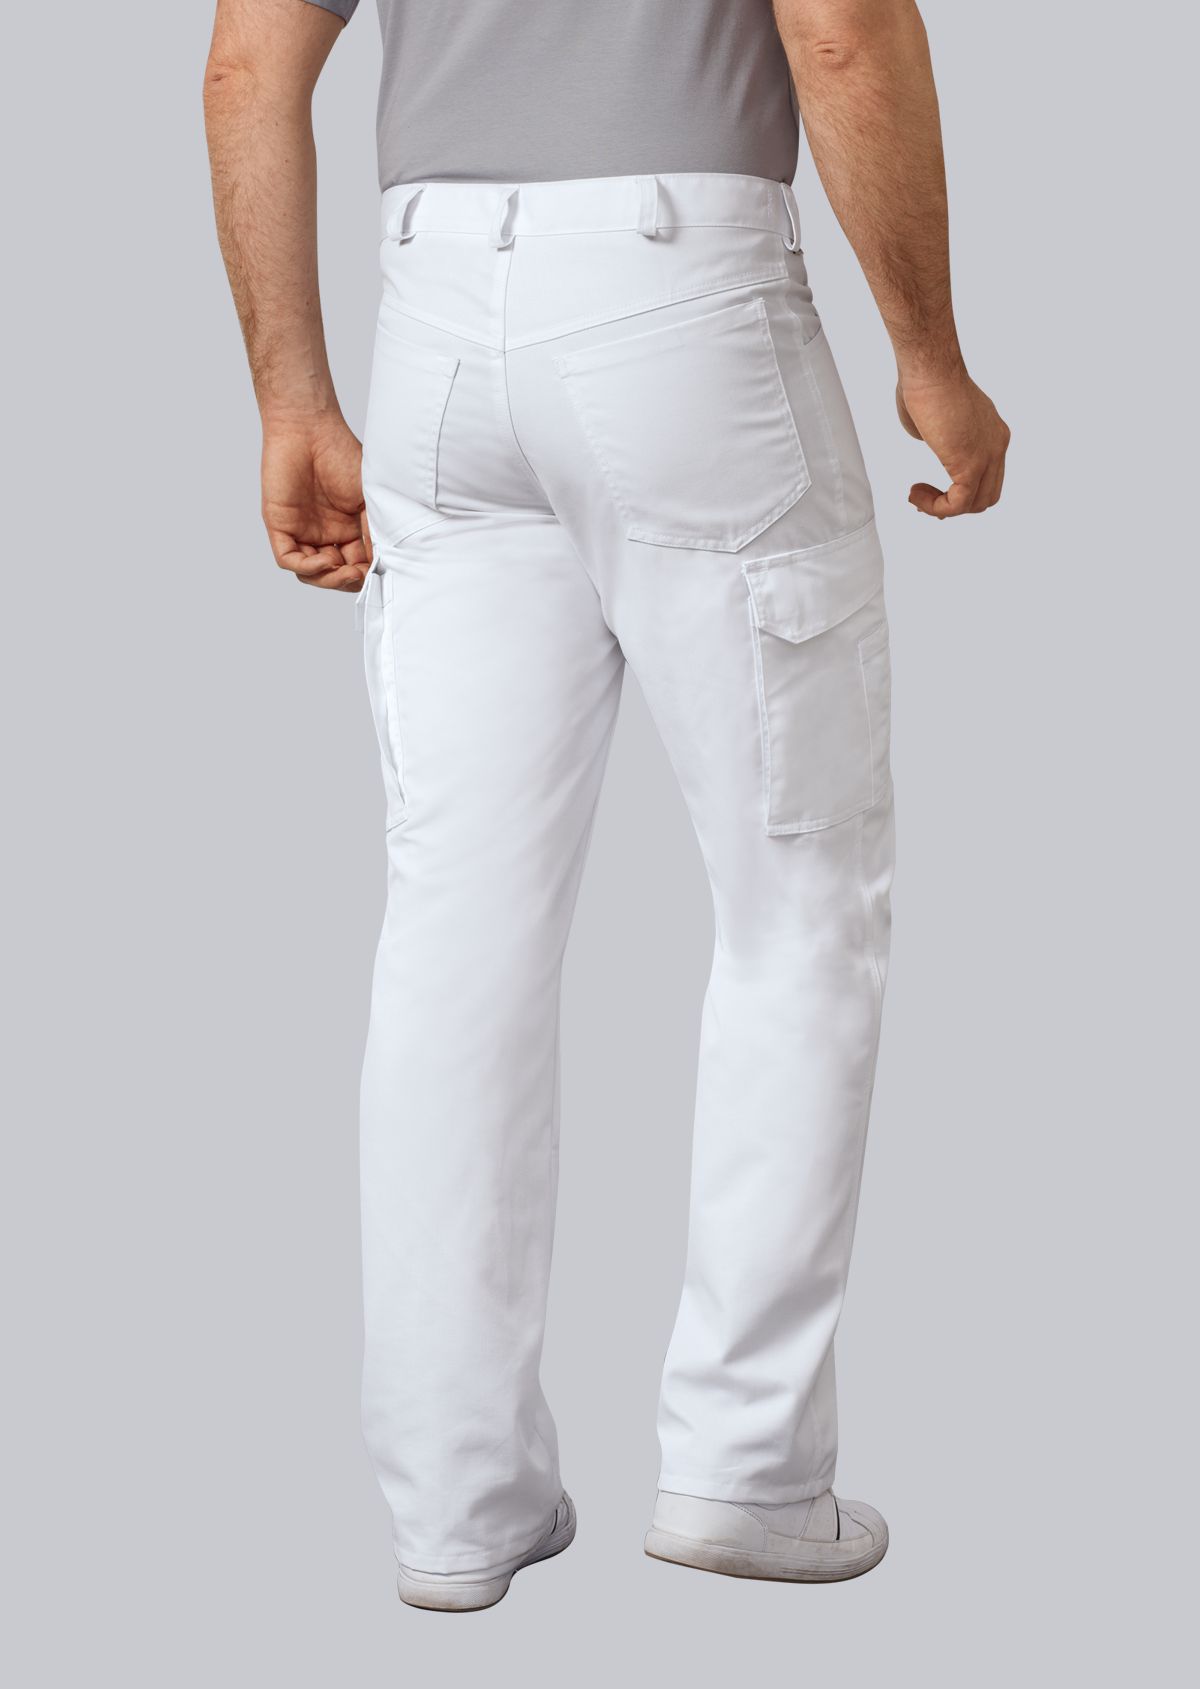 BP® Unisex jeans